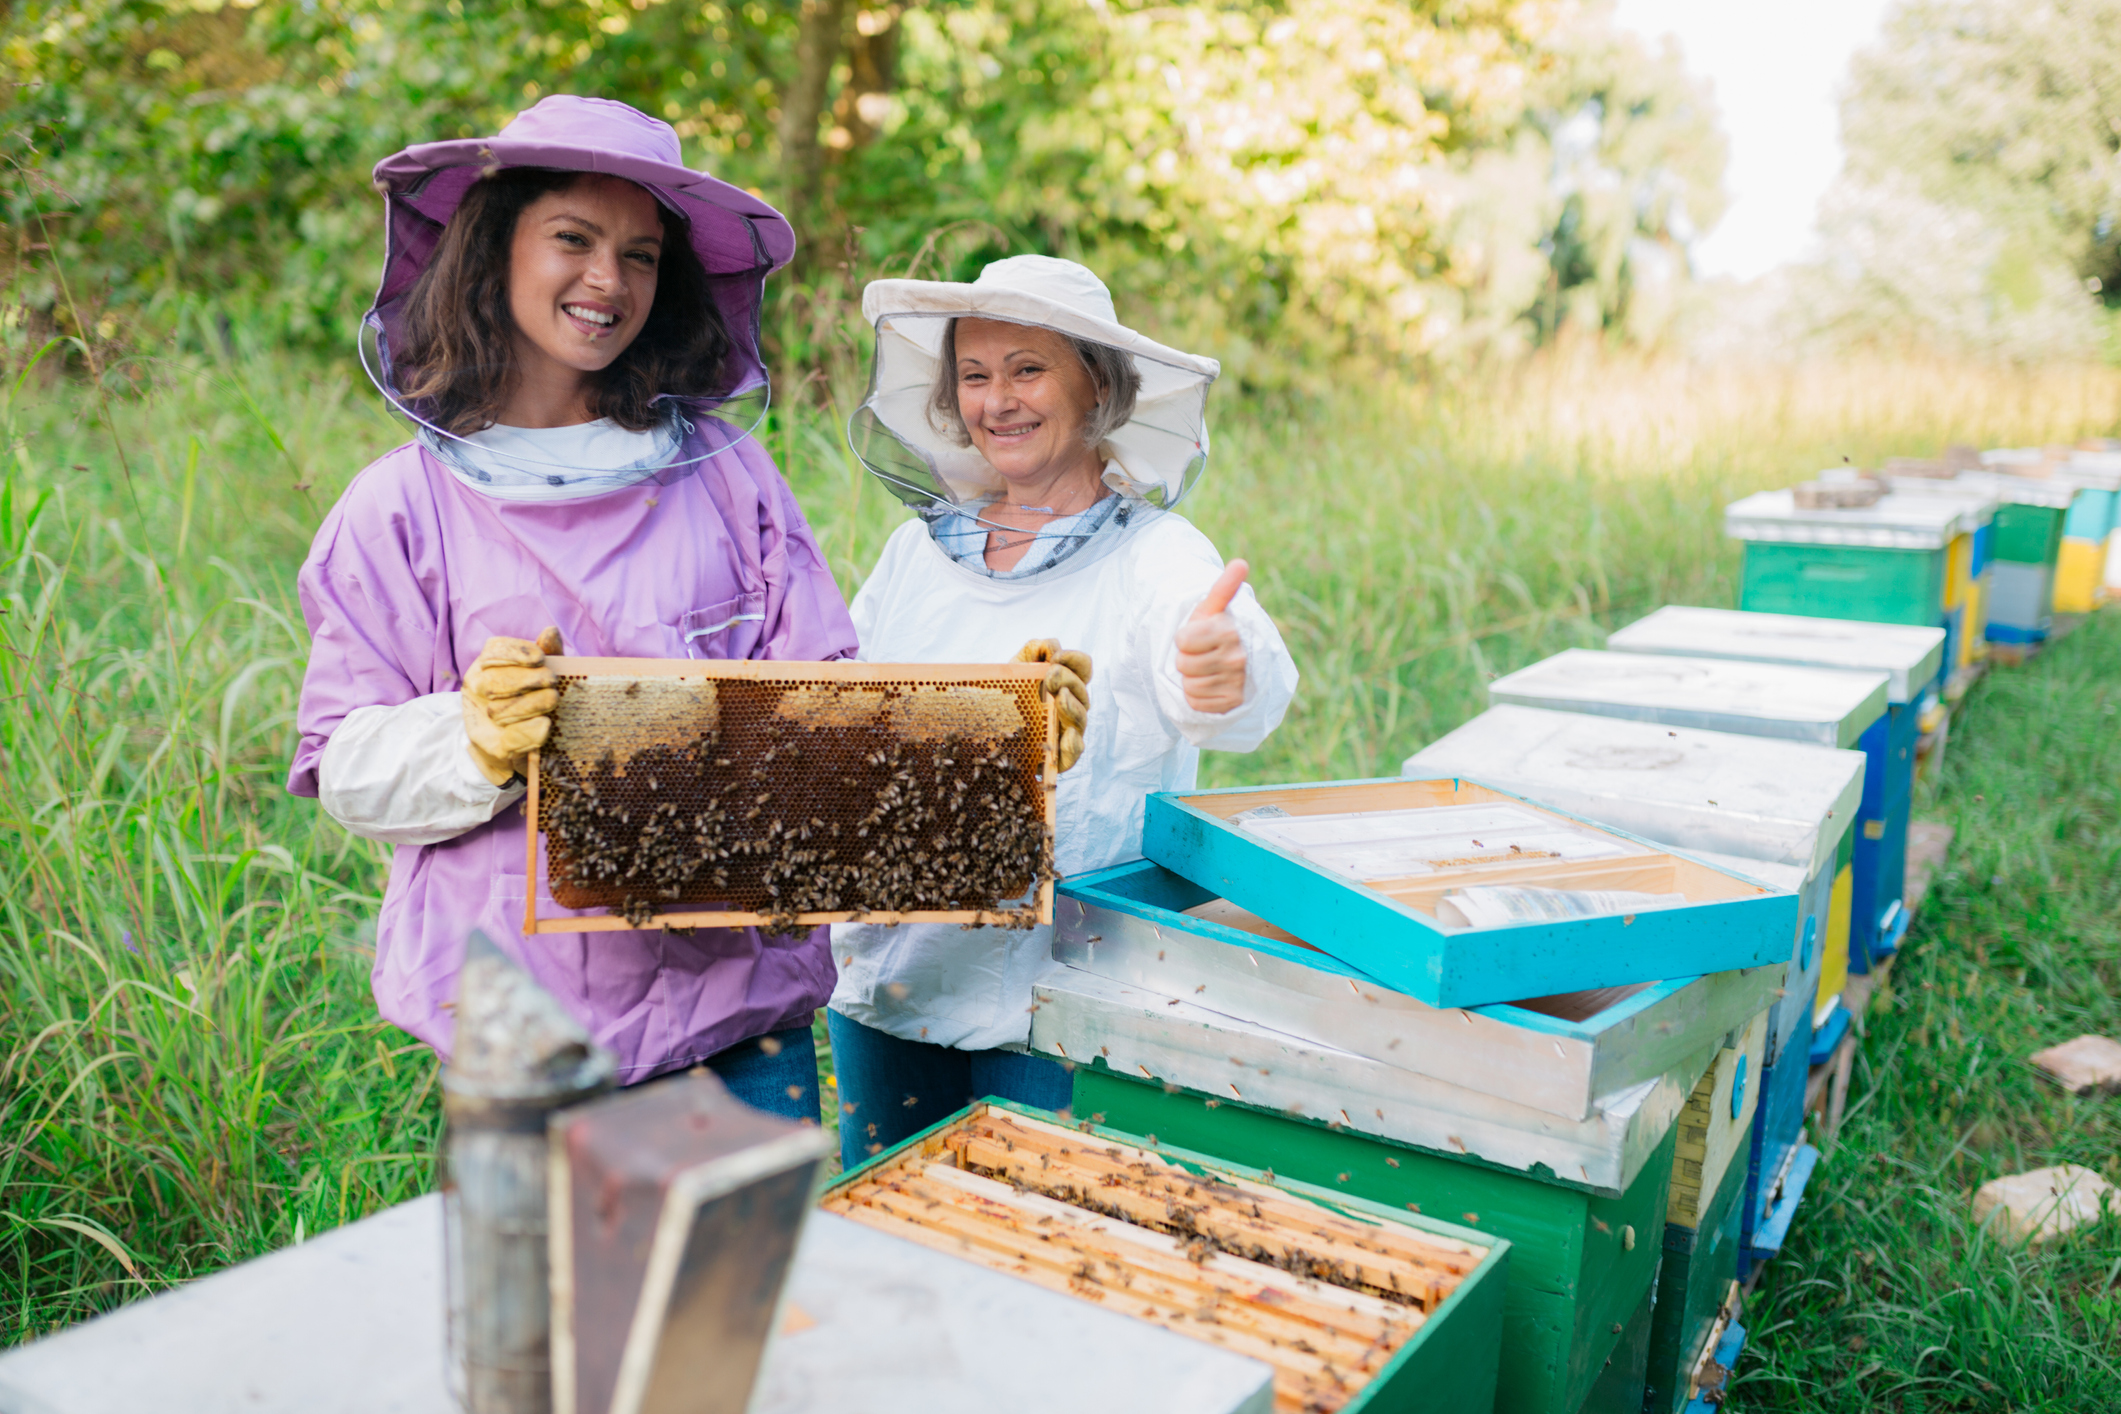 Chez les abeilles, la propolis est utilisée comme revêtement pour construire et fortifier les ruches et empêcher les intrus de s’y introduire. Elle possède également des propriétés antimicrobiennes et protège les abeilles contre les agents pathogènes.1